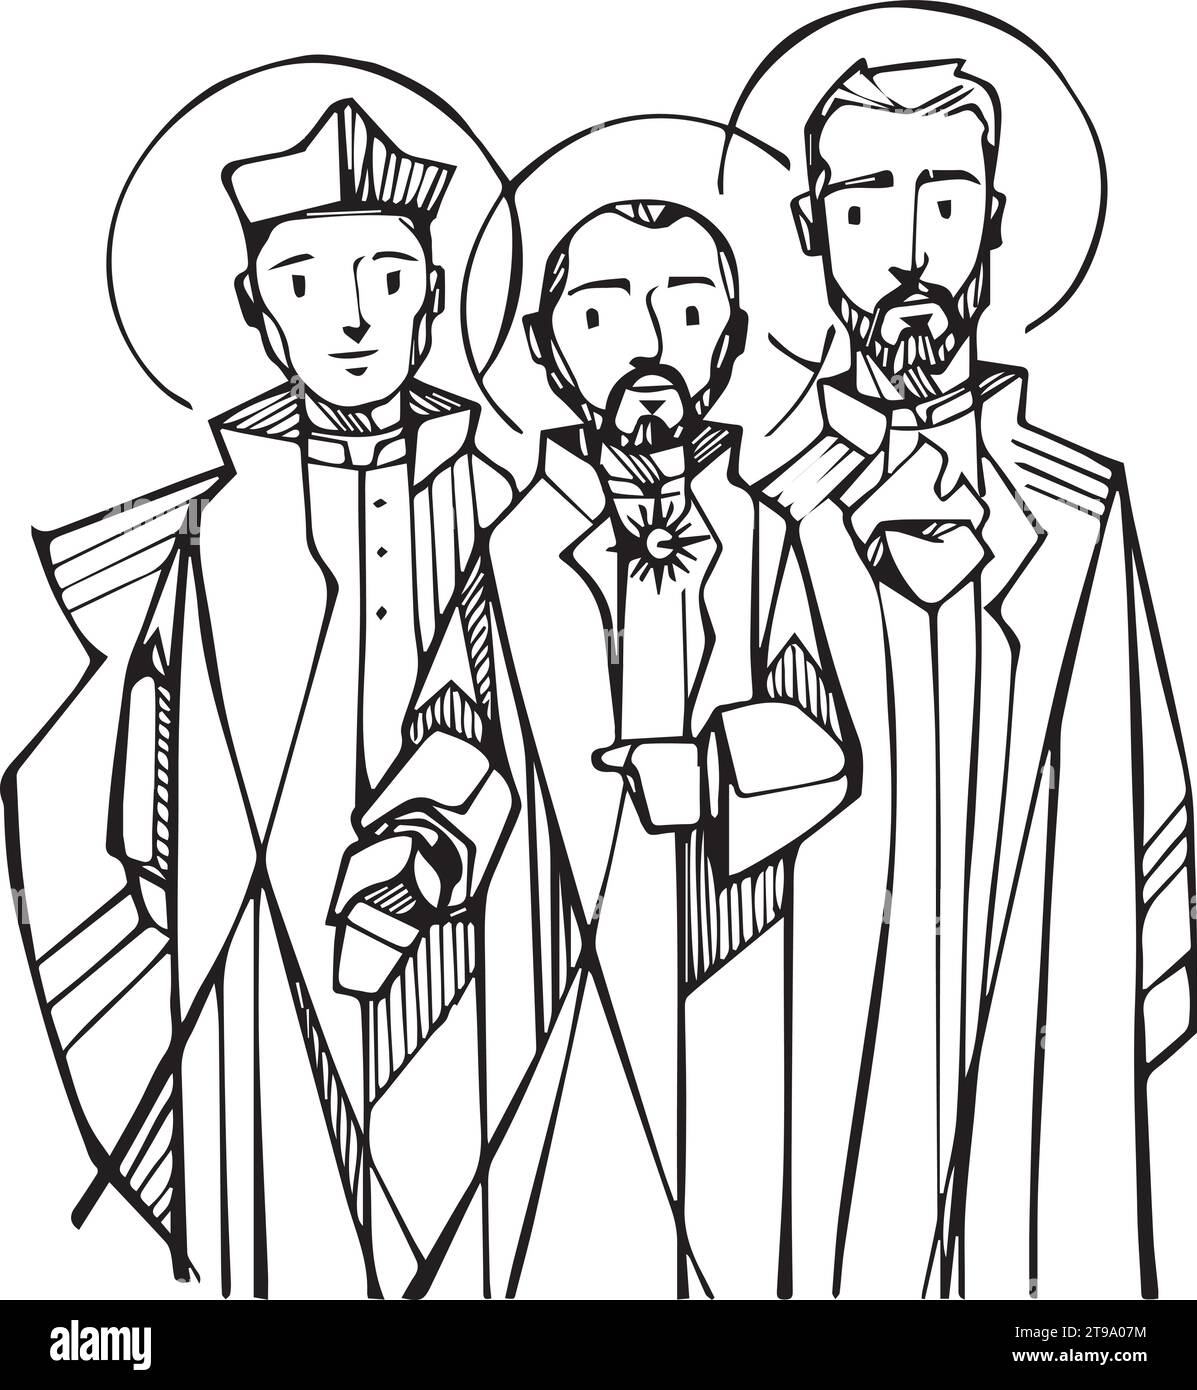 Illustrazione vettoriale disegnata a mano o disegno dei fondatori gesuiti Sant'Ignazio di Loyola, San Francesco Saverio e San Pietro Fabro Illustrazione Vettoriale